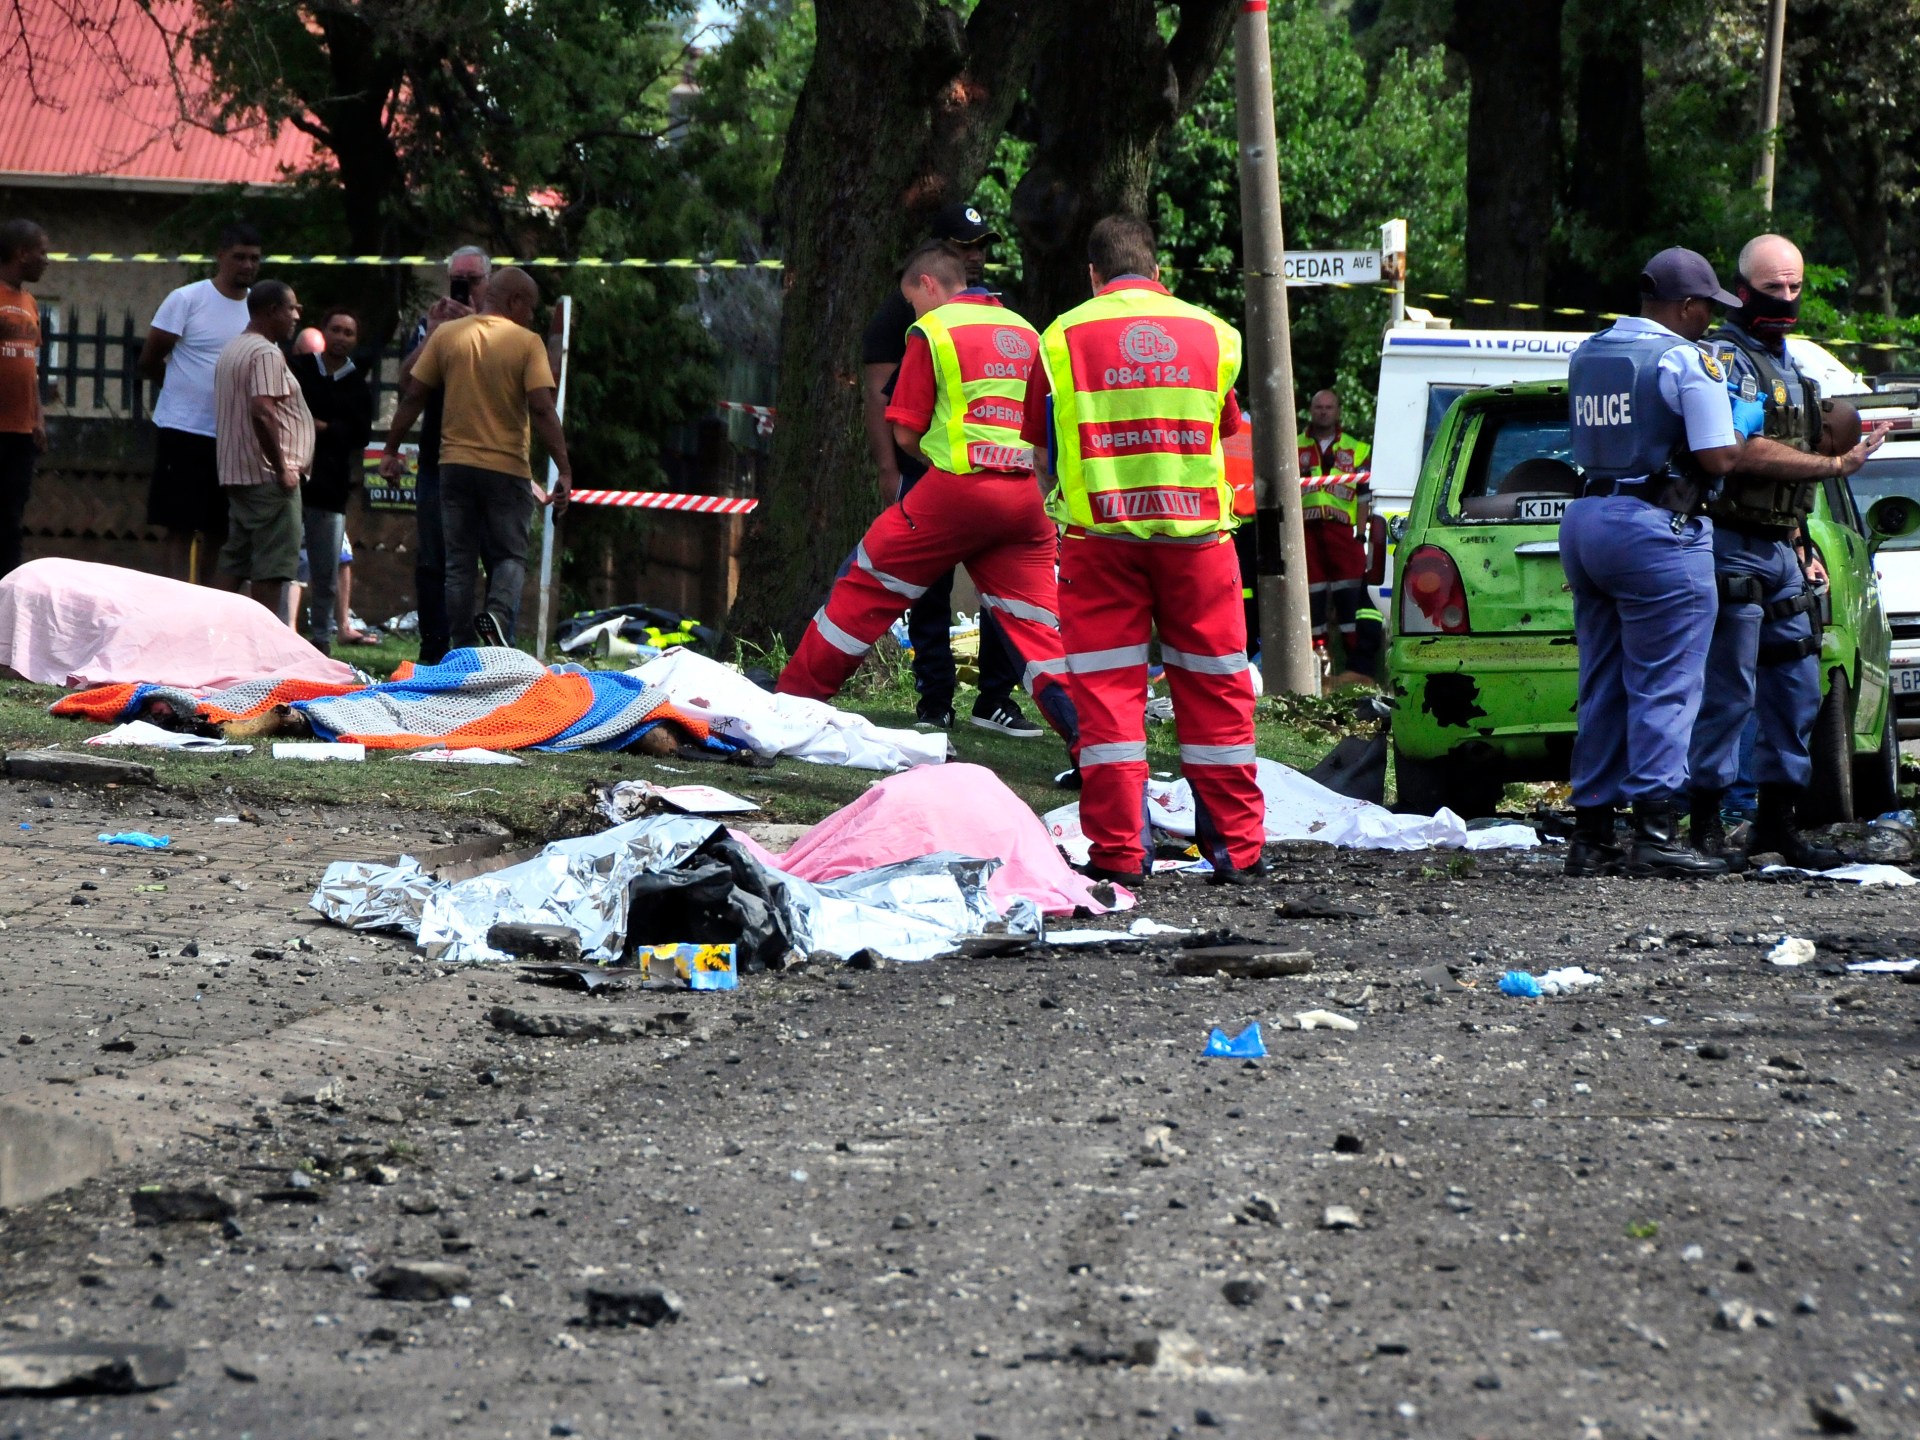 L’Afrique du Sud pleure les victimes de l’explosion d’un pétrolier, le nombre de morts s’élève à 34 |  Infos santé